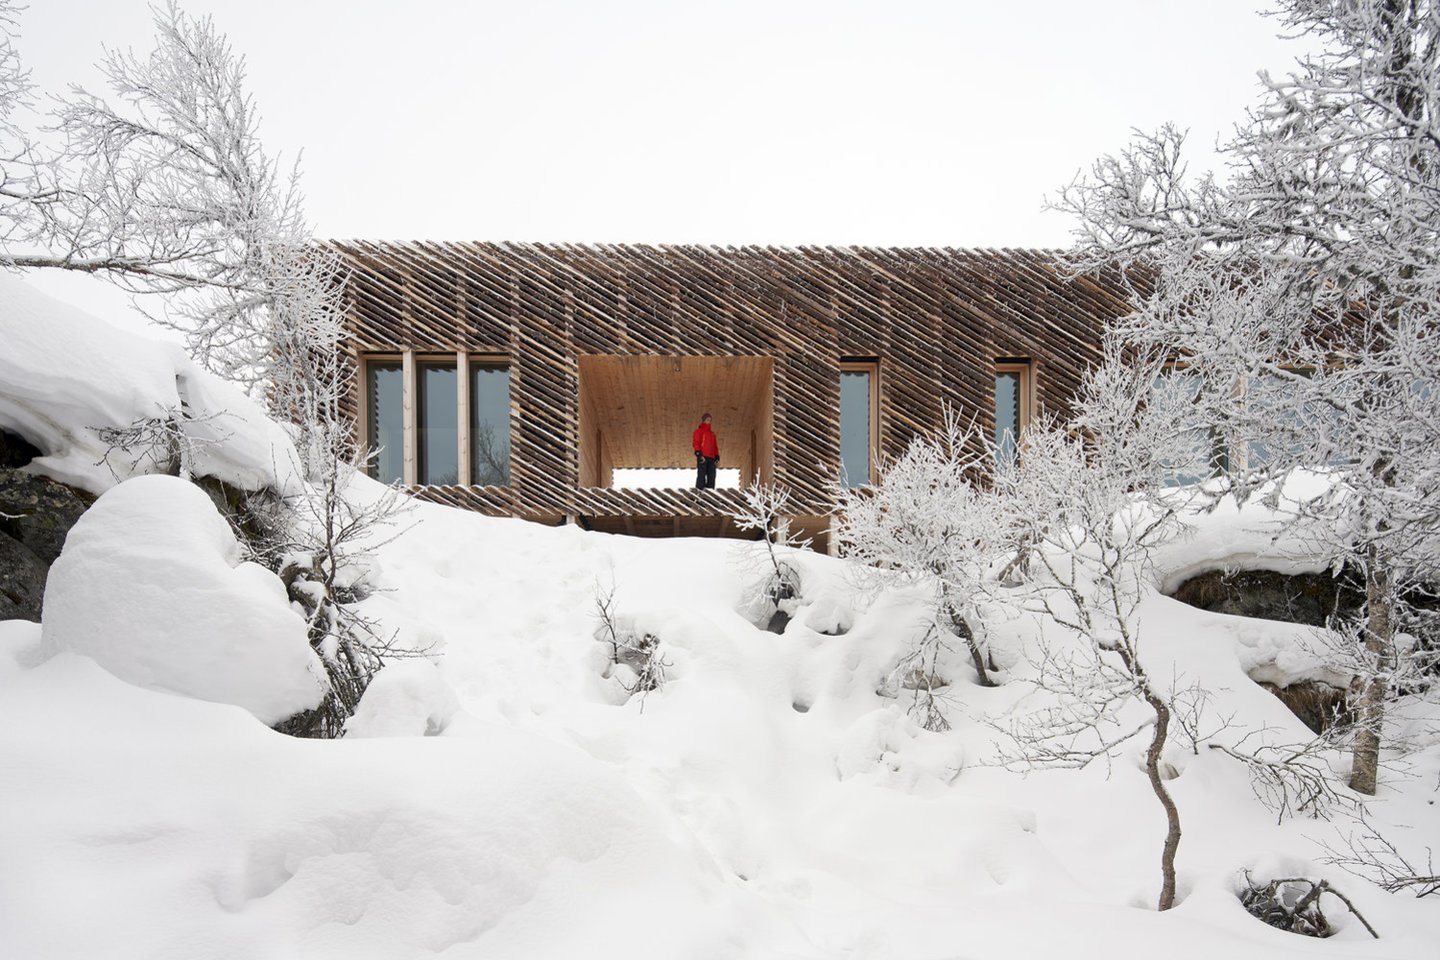 Vakarinėje Norvegijos slidinėjimo kurorto Kvitfjellio pusėje, į šiaurę nuo Lillehammerio, architektų biuras „Mork-Ulnes Architects“ kalnuose suprojektavo 145 kv. m ploto namelį.<br>Bruce Damonte / archdaily.com nuotr.